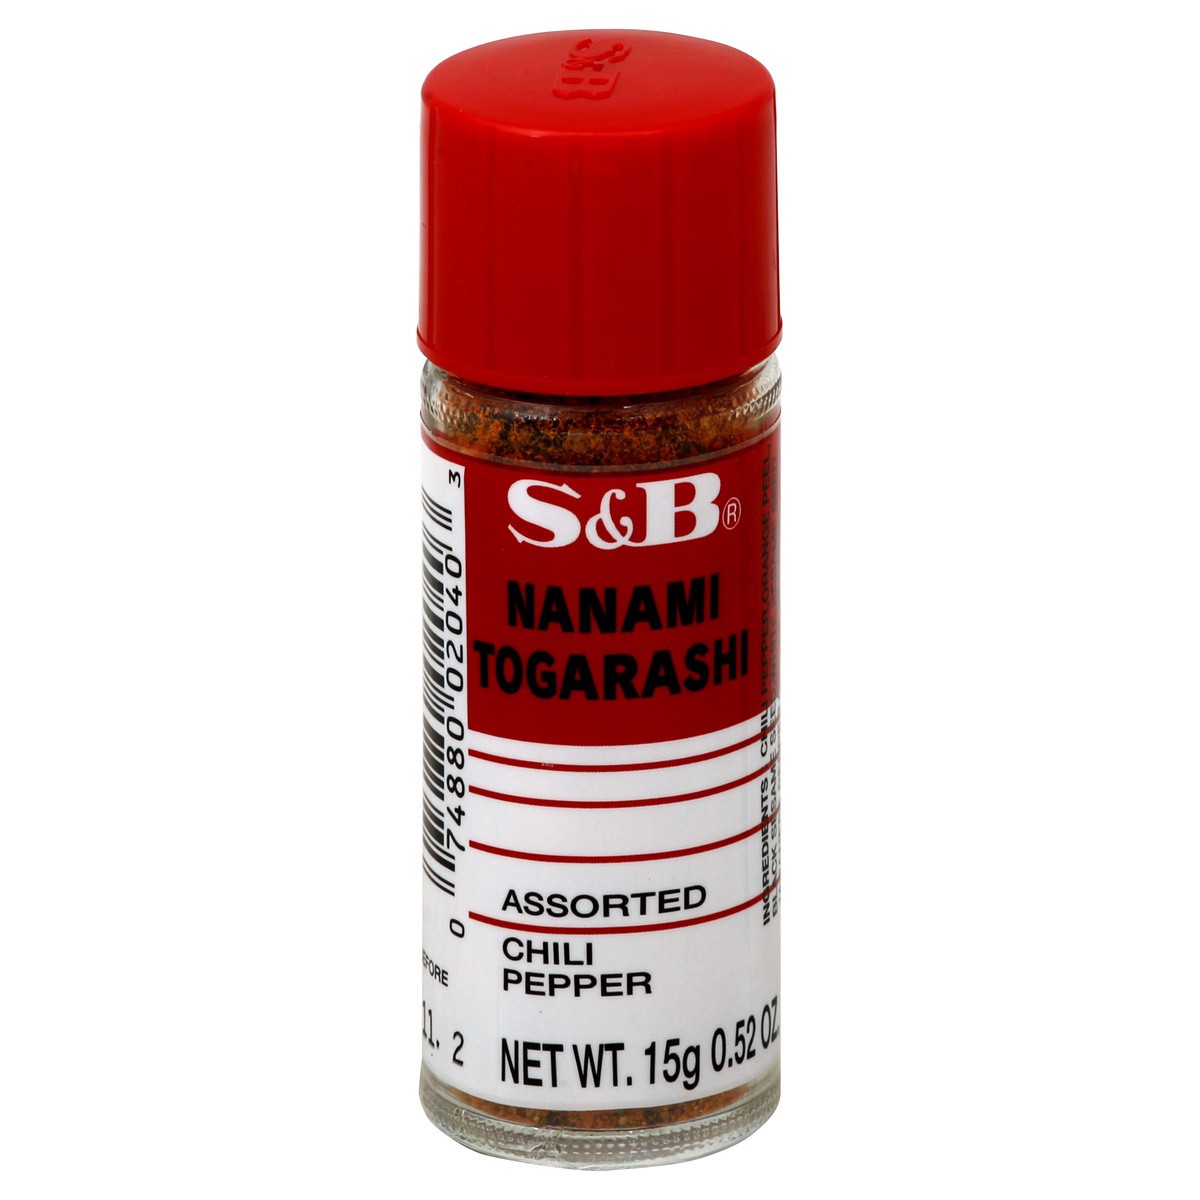 slide 1 of 2, S&B Nanami Togarashi Assorted Chili Pepper Spice, 0.52 oz